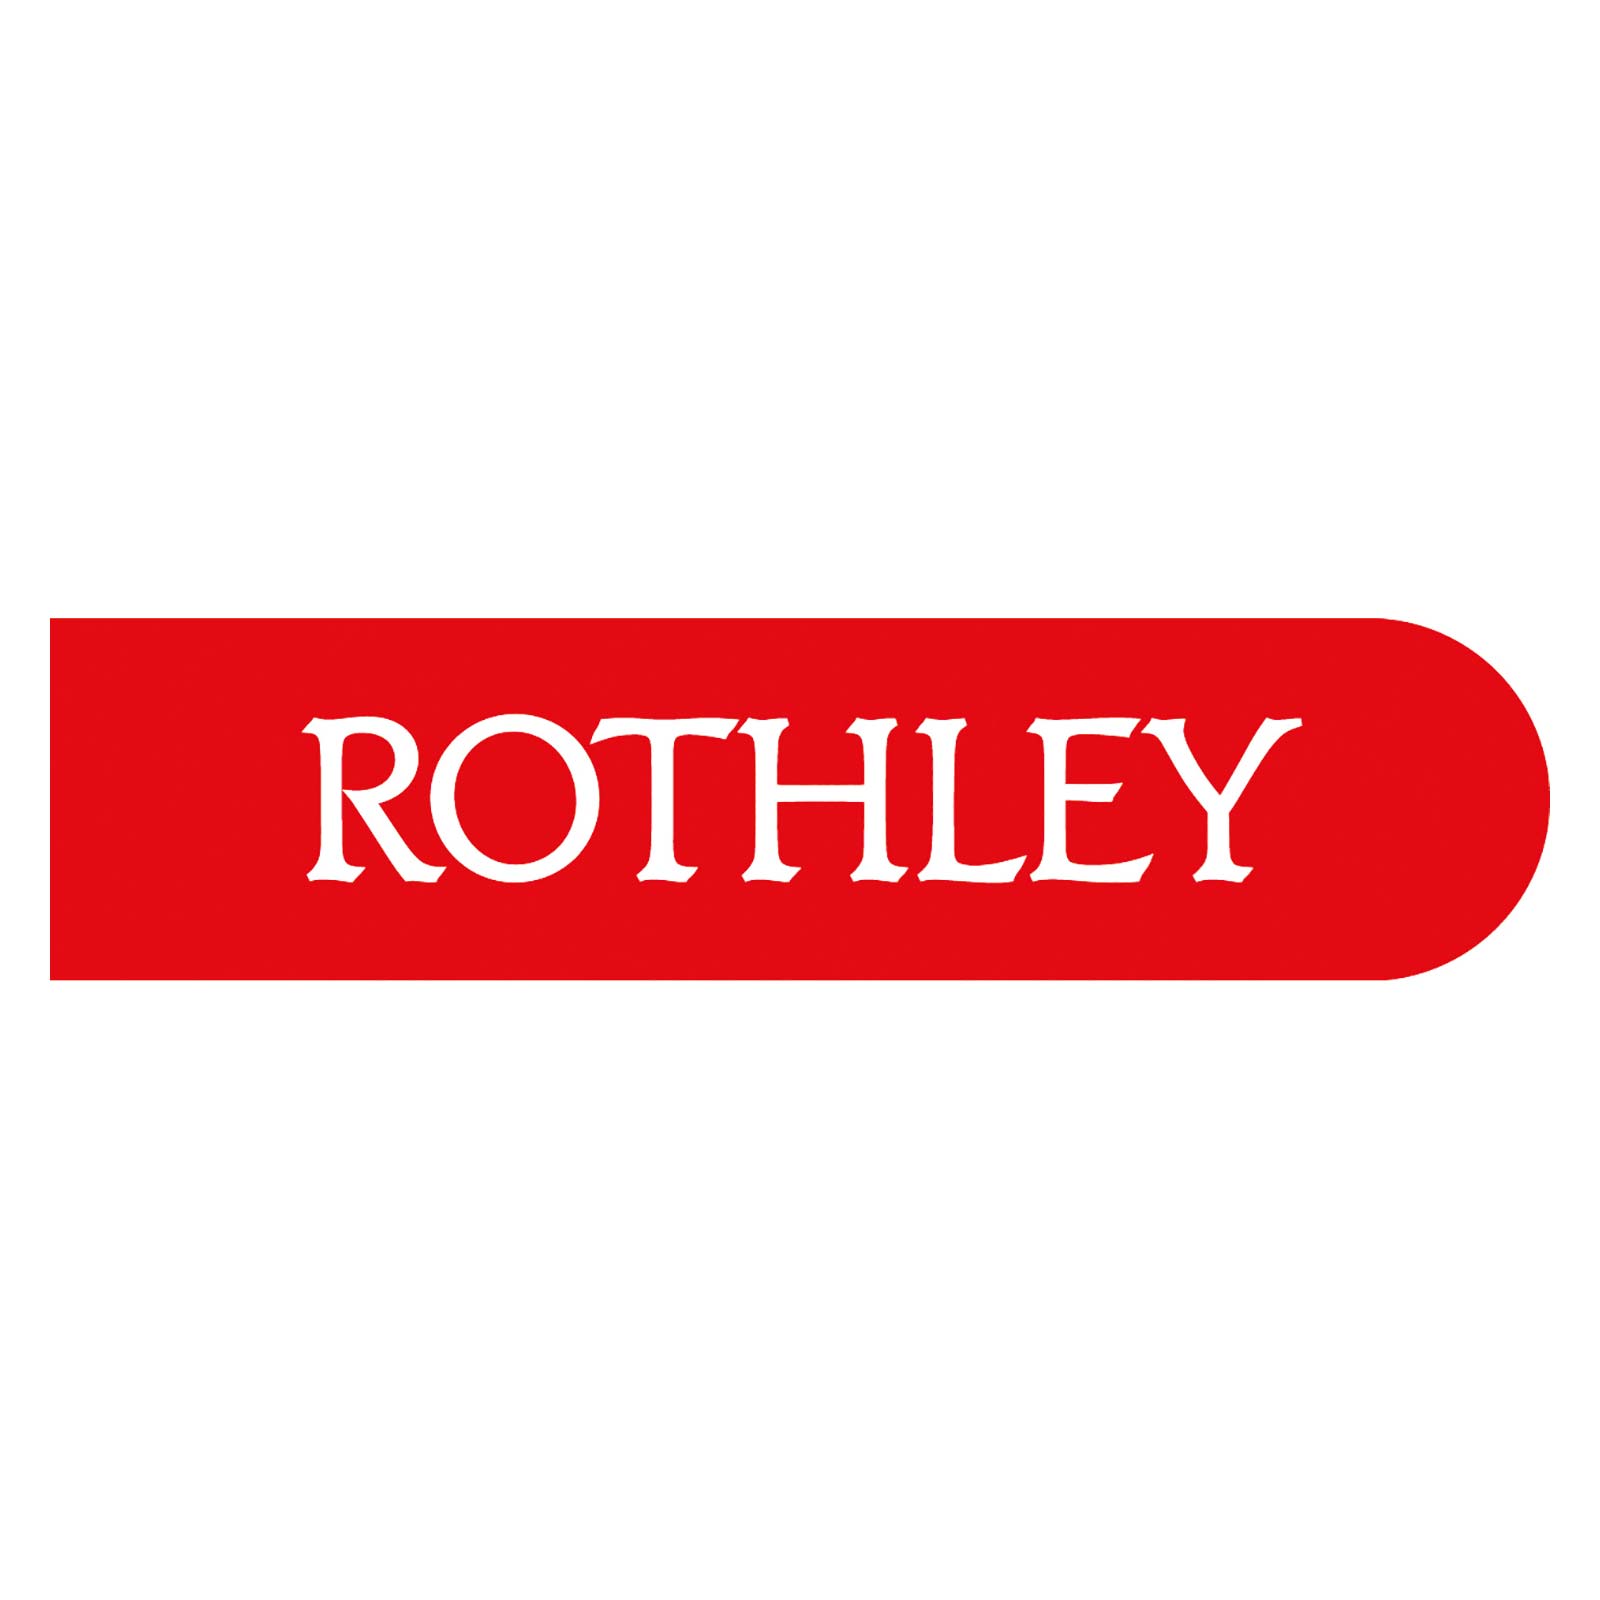 Rothley